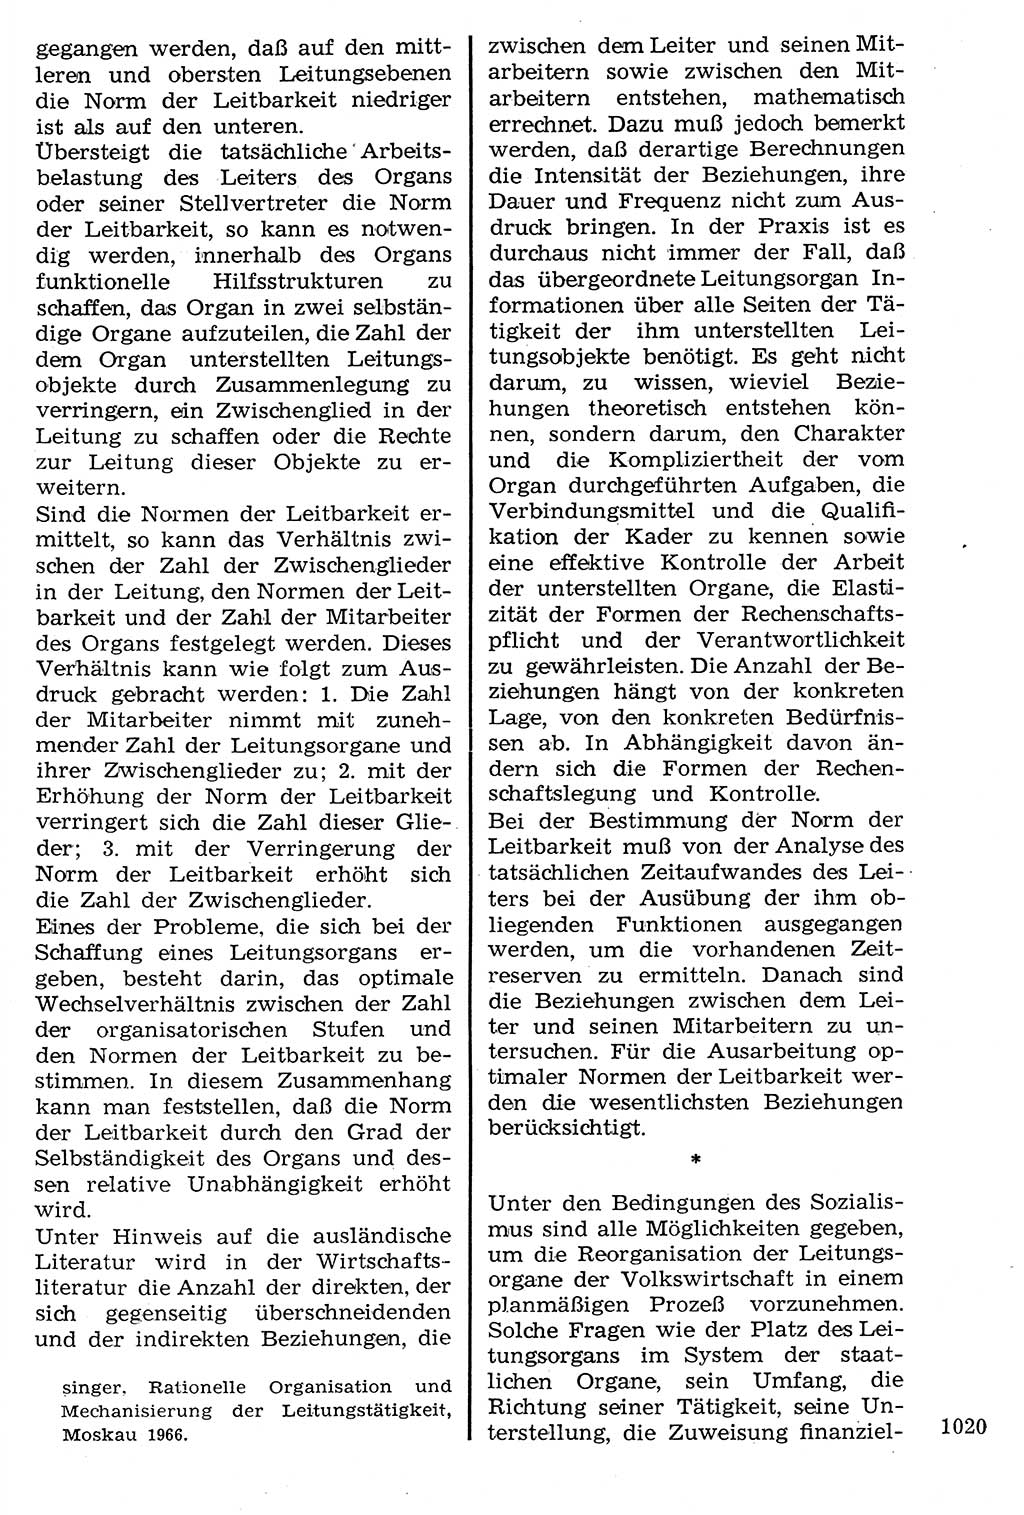 Staat und Recht (StuR), 17. Jahrgang [Deutsche Demokratische Republik (DDR)] 1968, Seite 1020 (StuR DDR 1968, S. 1020)